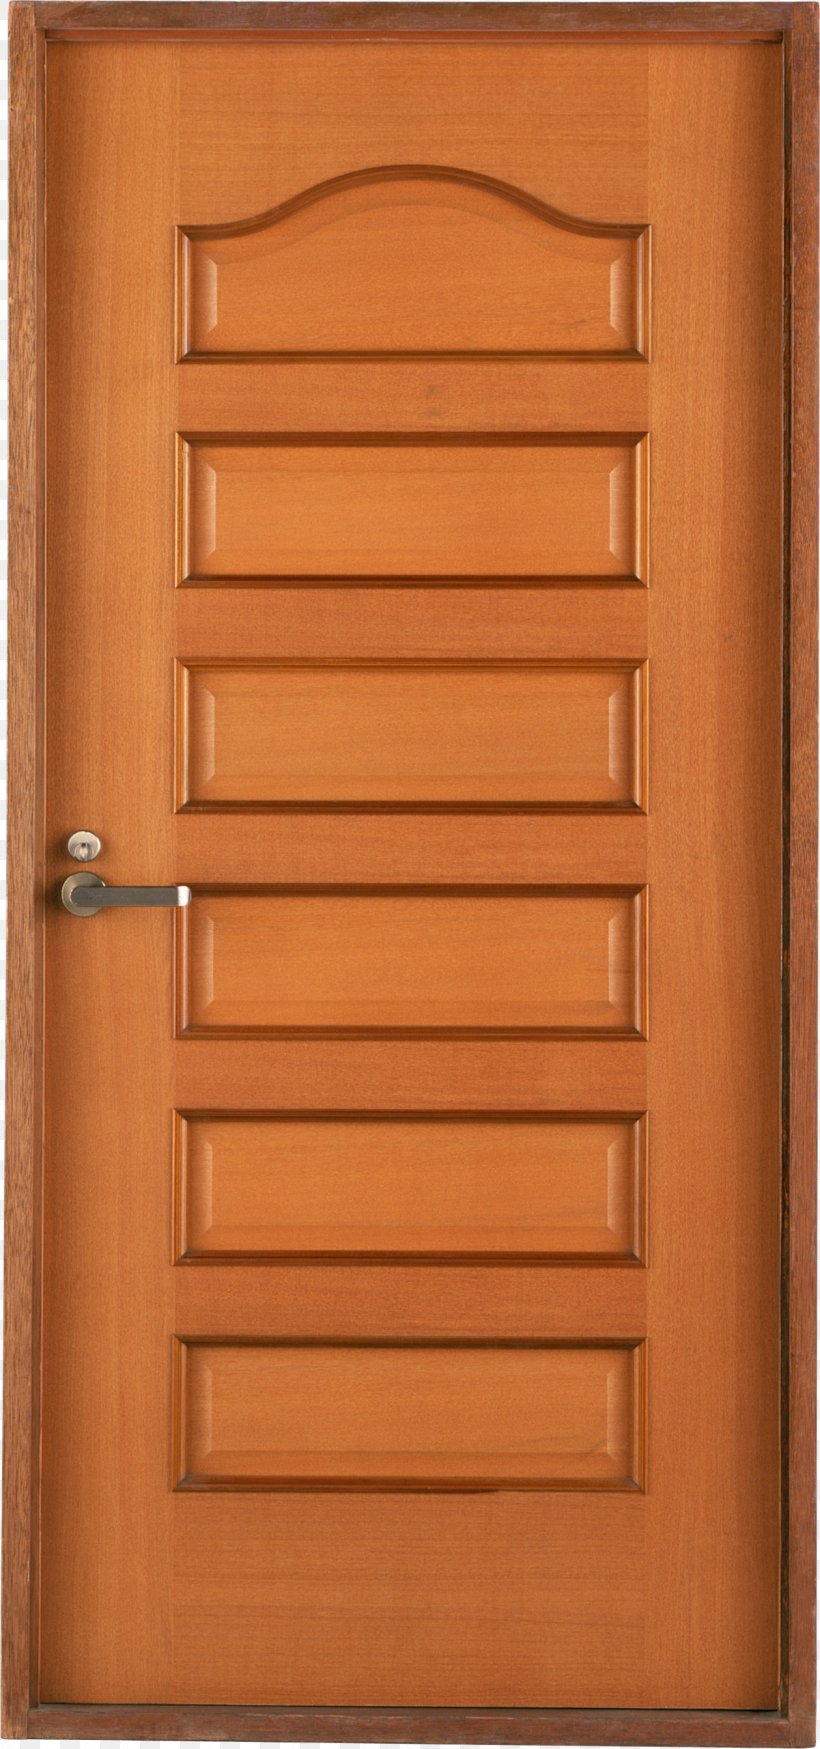 Door County, Wisconsin Window Gate Therma Tru Ltd, PNG, 1259x2686px, Window, Building, Cabinetry, Door, Floor Download Free